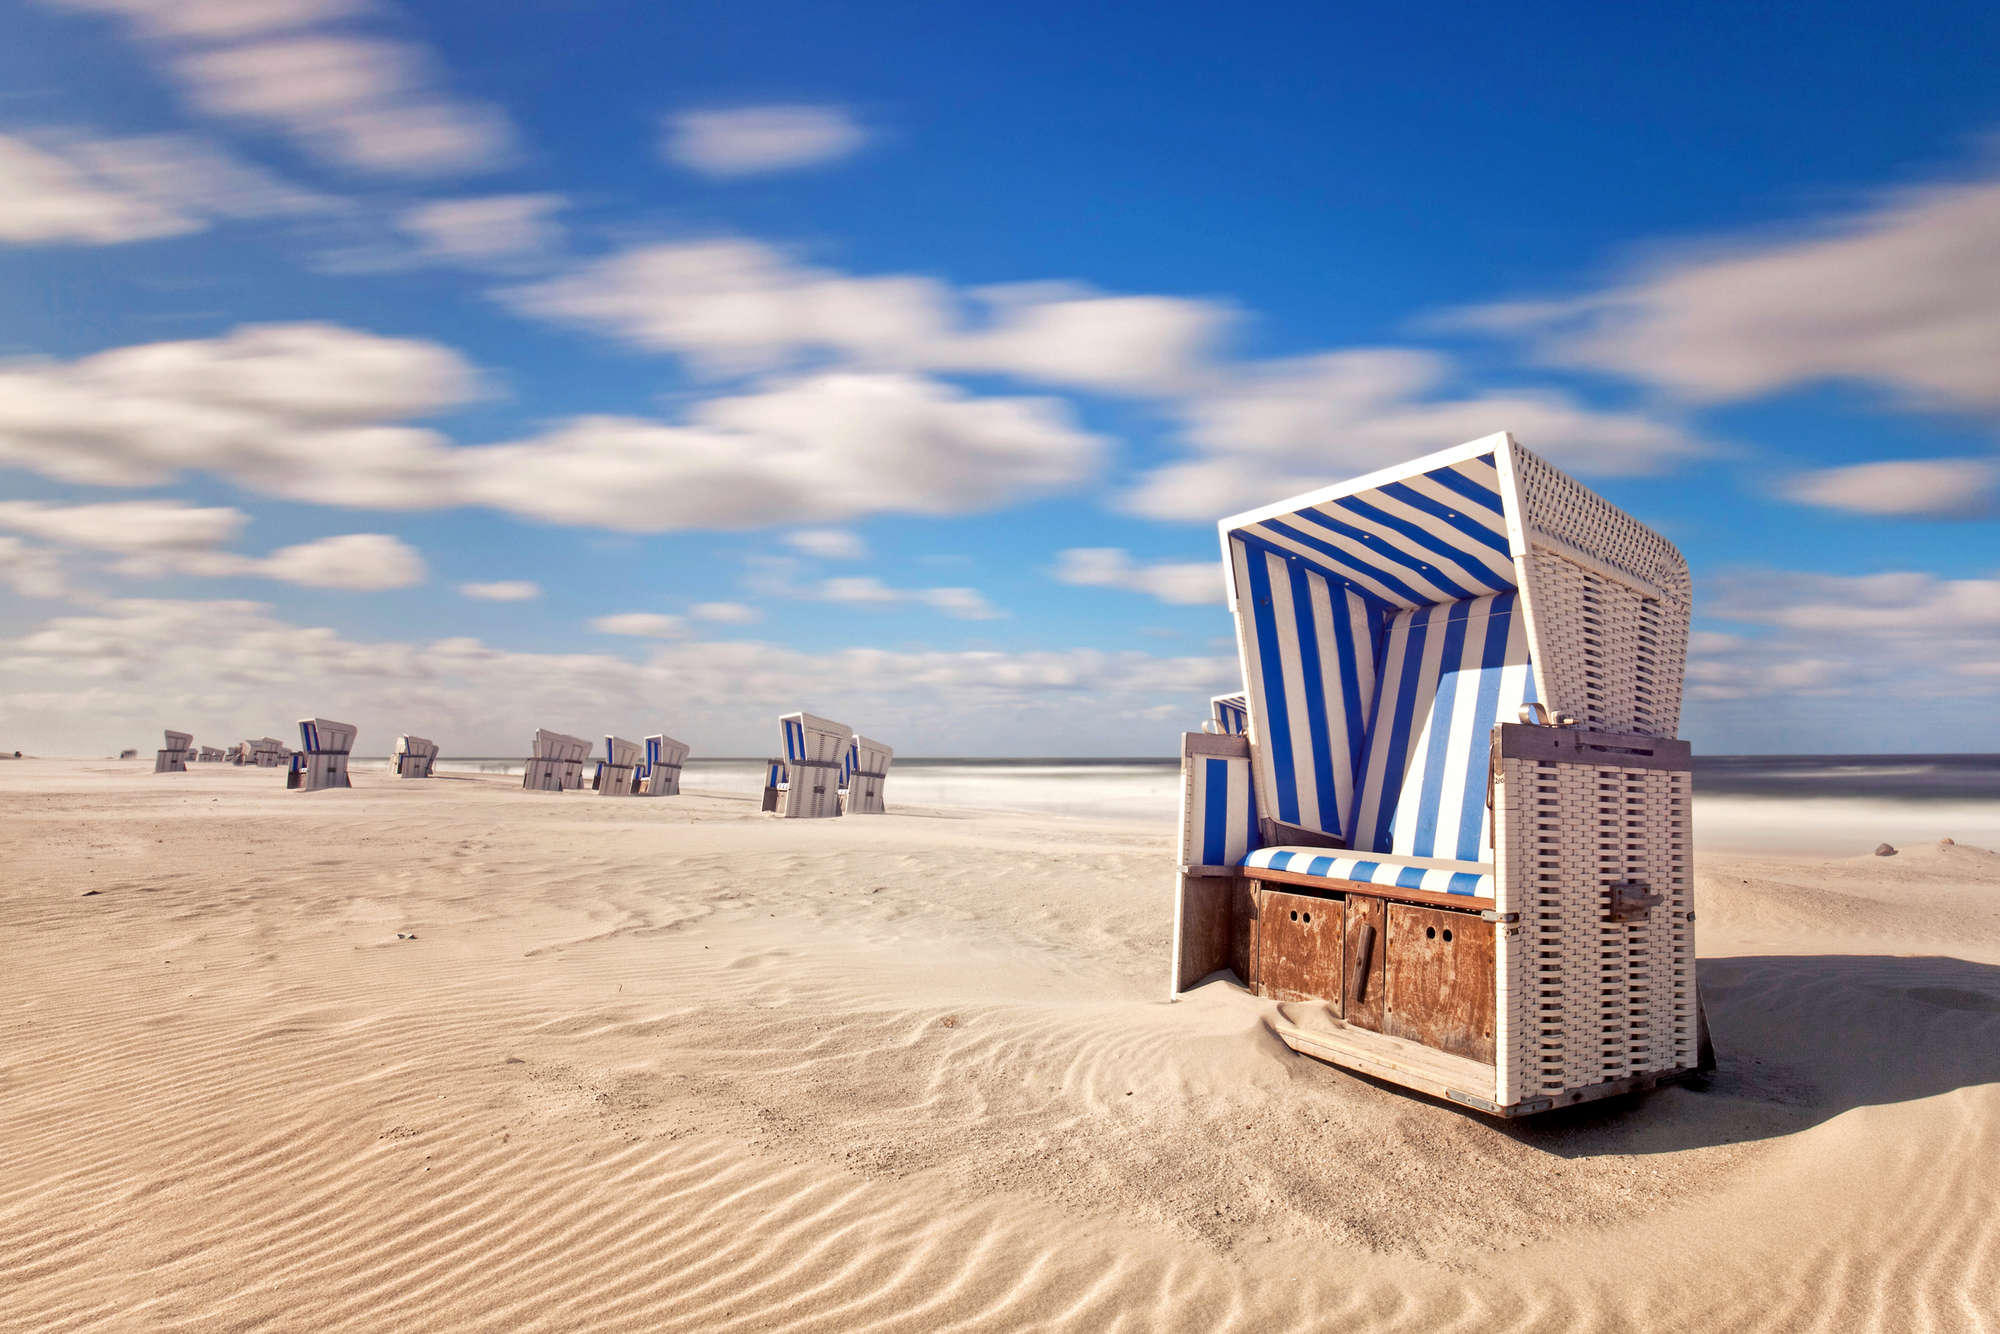             Mural de la playa sillas de playa en la arena sobre vellón liso mate
        